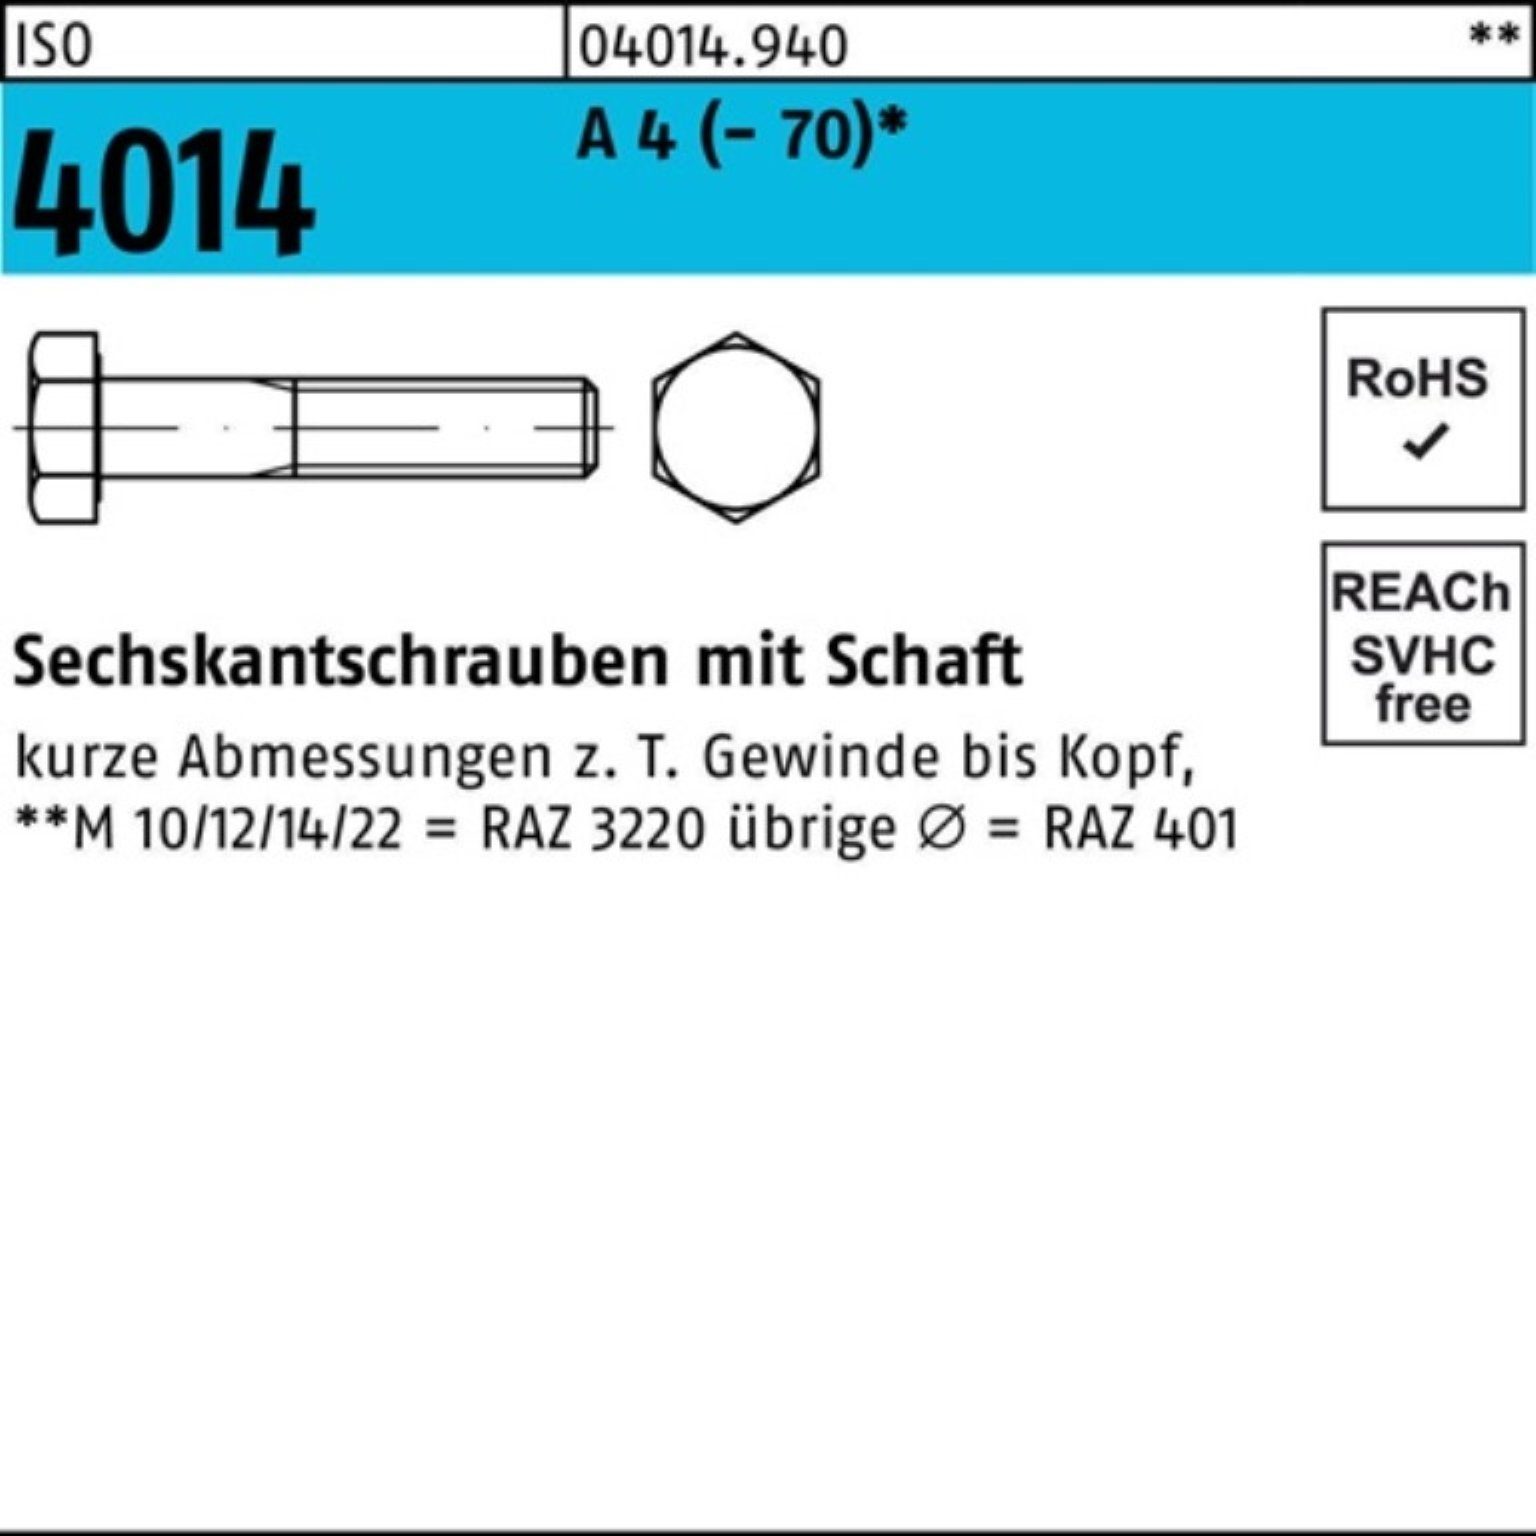 A Sechskantschraube ISO 100er M14x 4 25 130 Bufab St Schaft Pack 4014 Sechskantschraube (70)